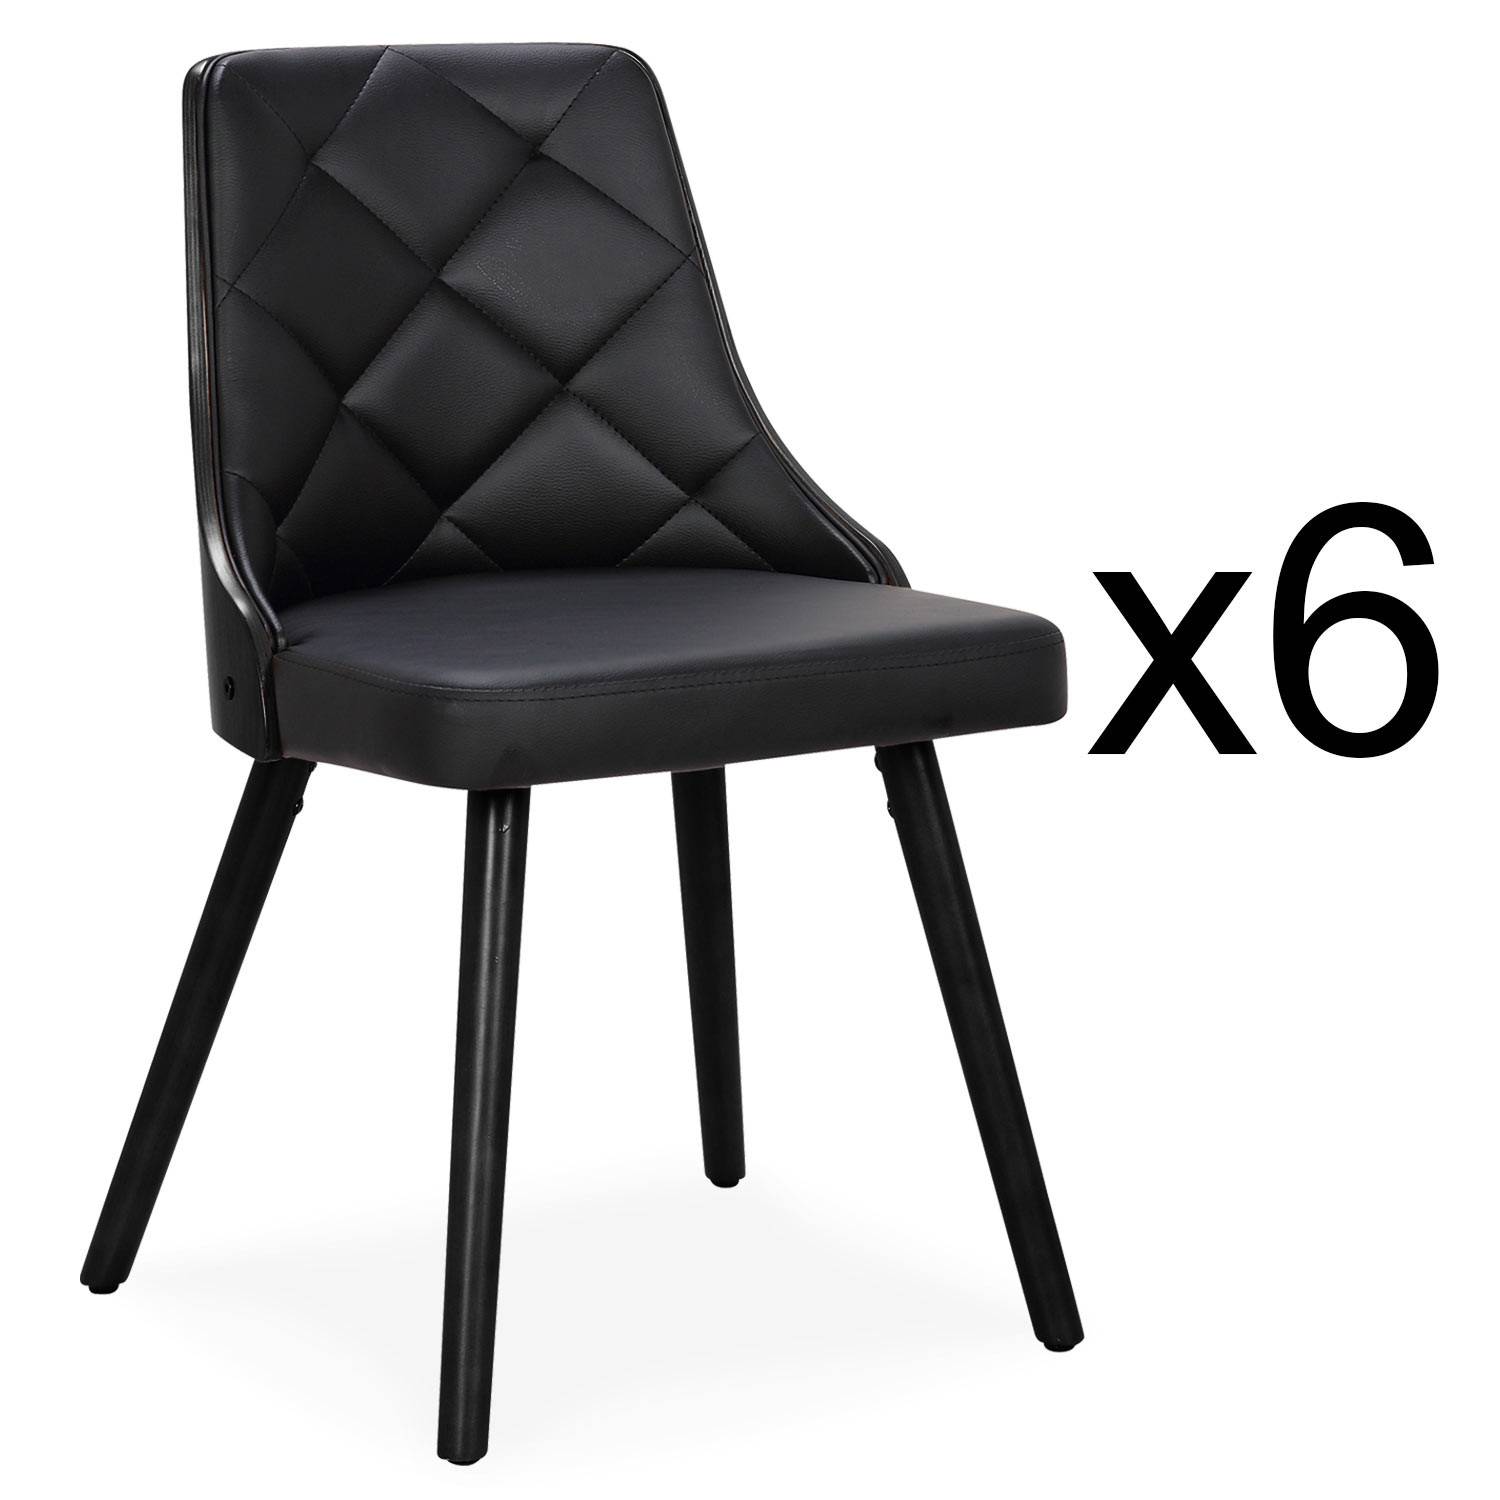 Lote de 6 sillas escandinavas Lalix de madera negra y polipiel negra